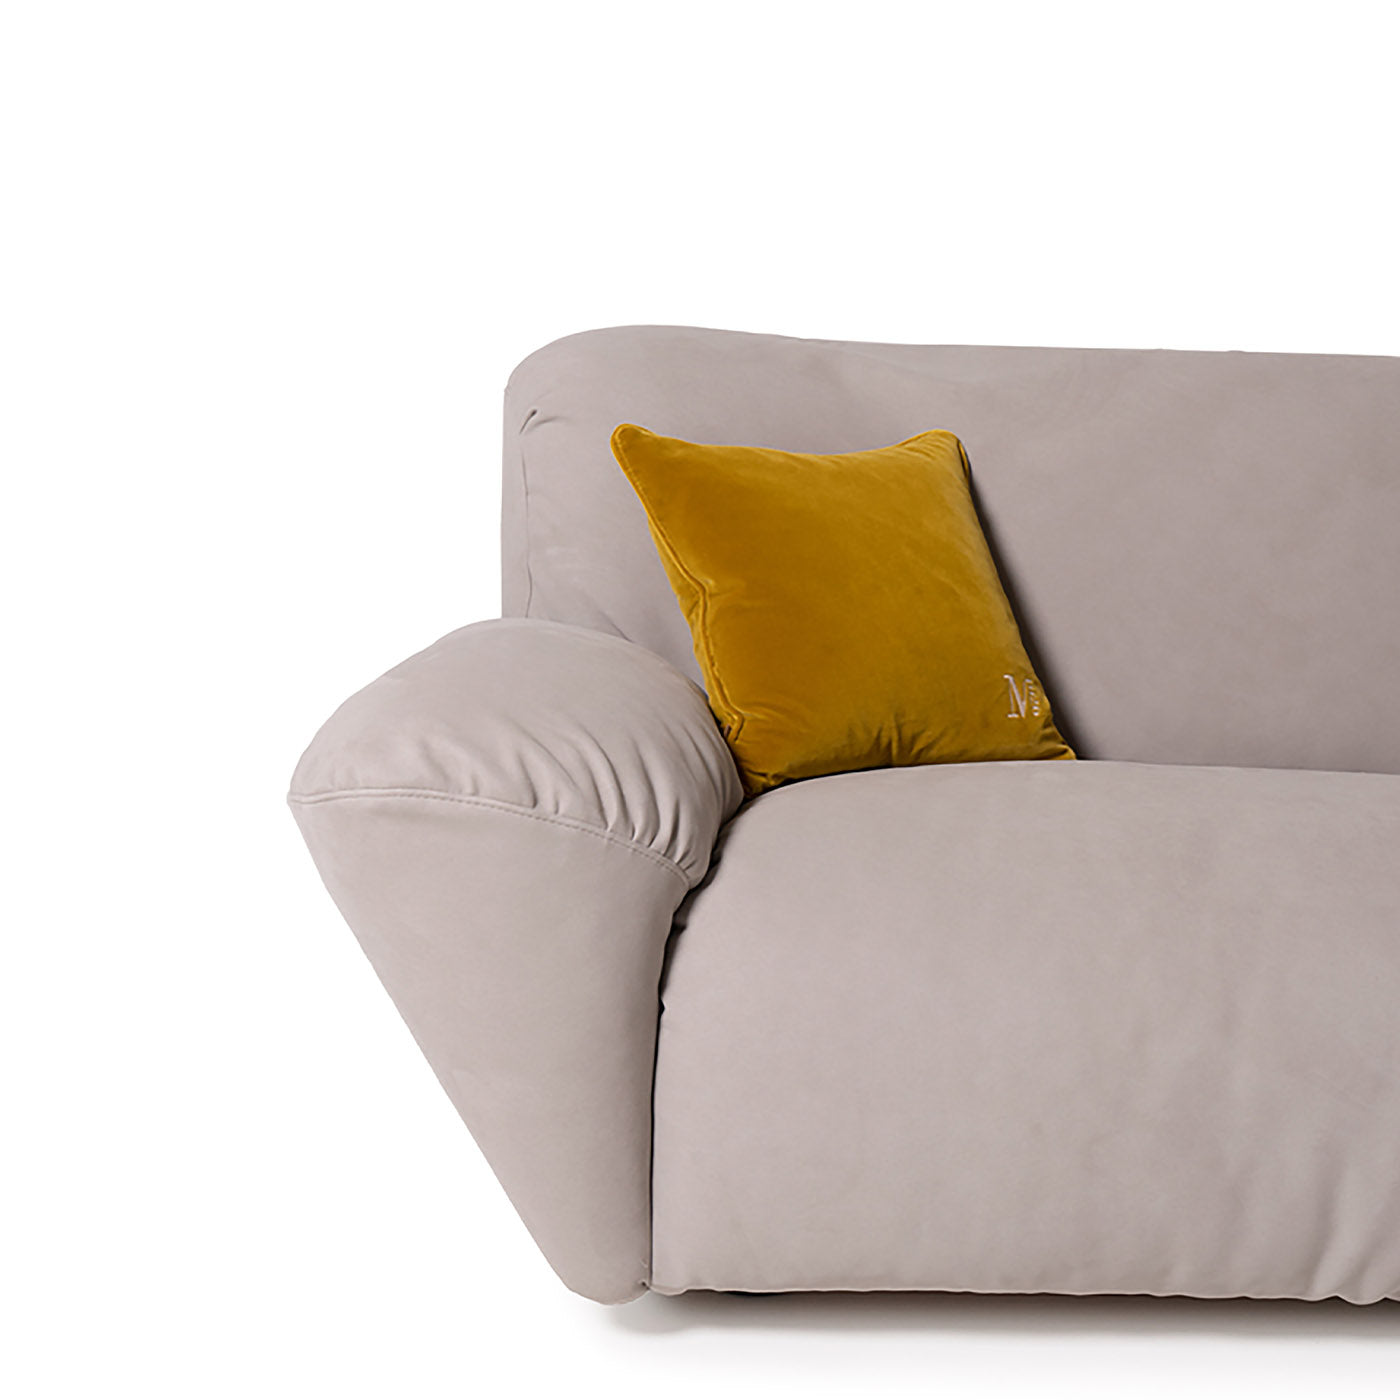 Beluga 2-sitziges midi-sofa von Marco und Giulio Mantellassi - Alternative Ansicht 2